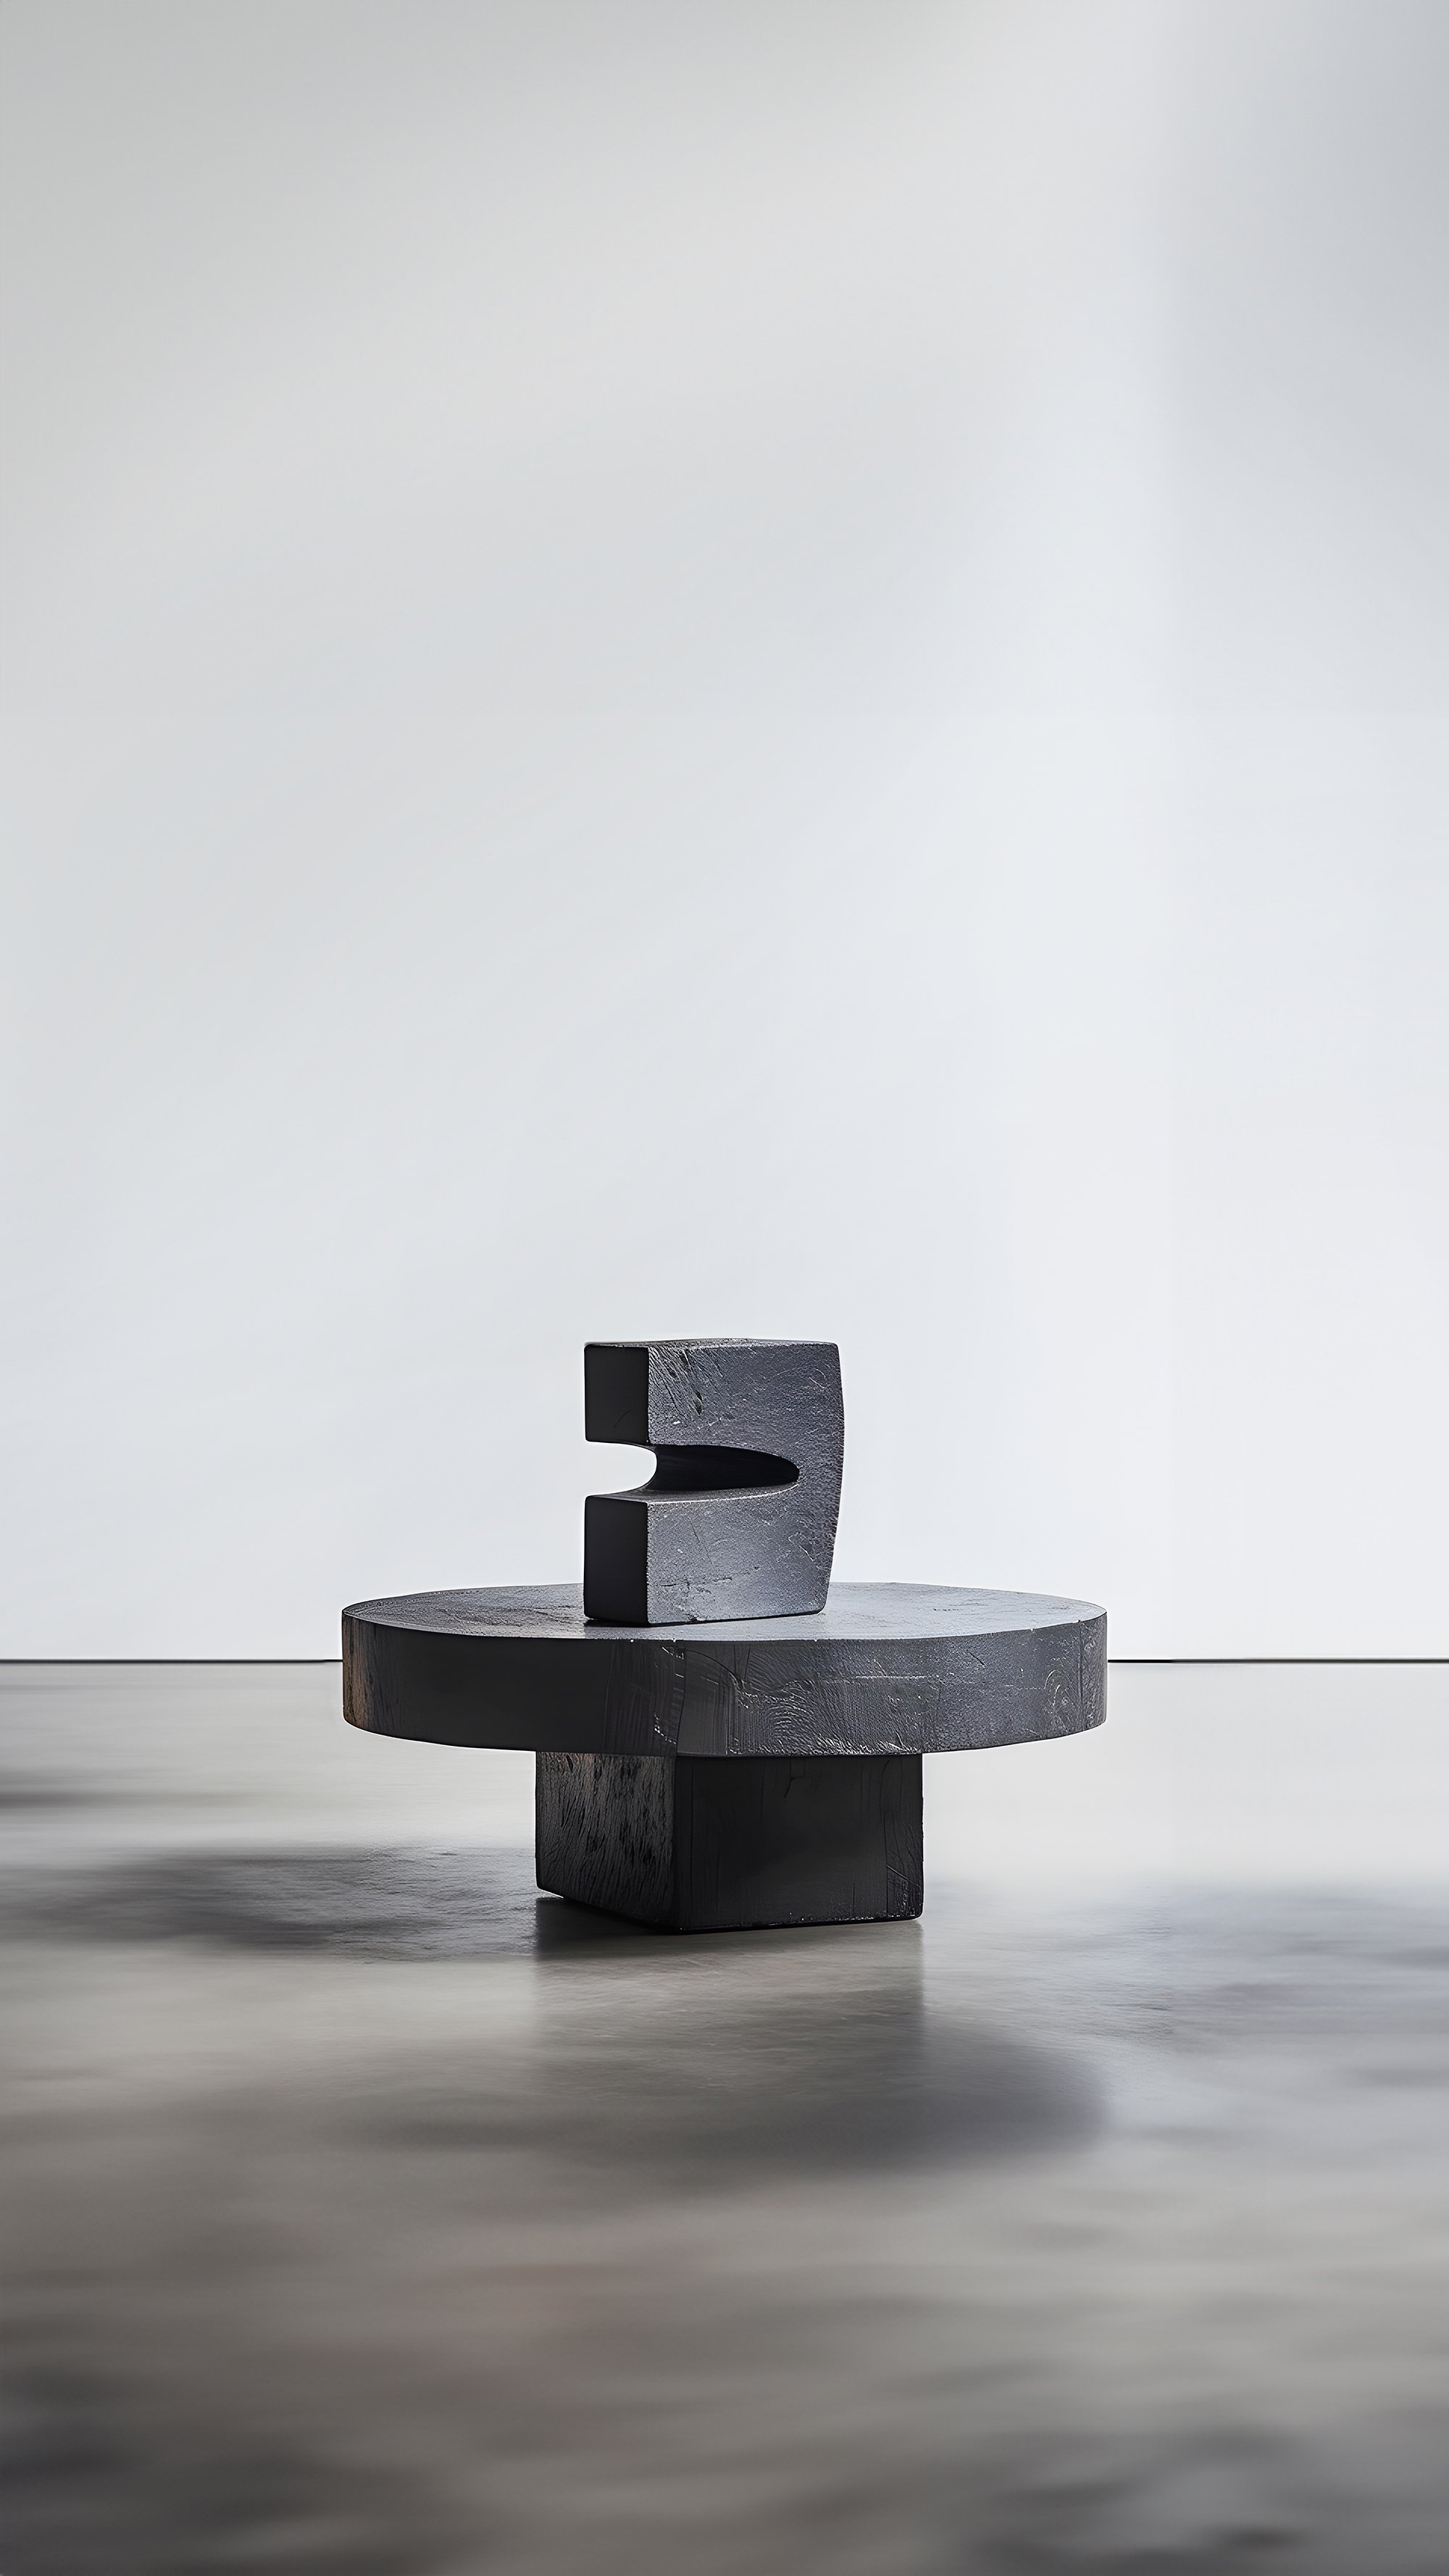 Gallery-Style Unseen Force #5 Solid Oak Table by Joel Escalona, Luxe Decor — 4.jpg